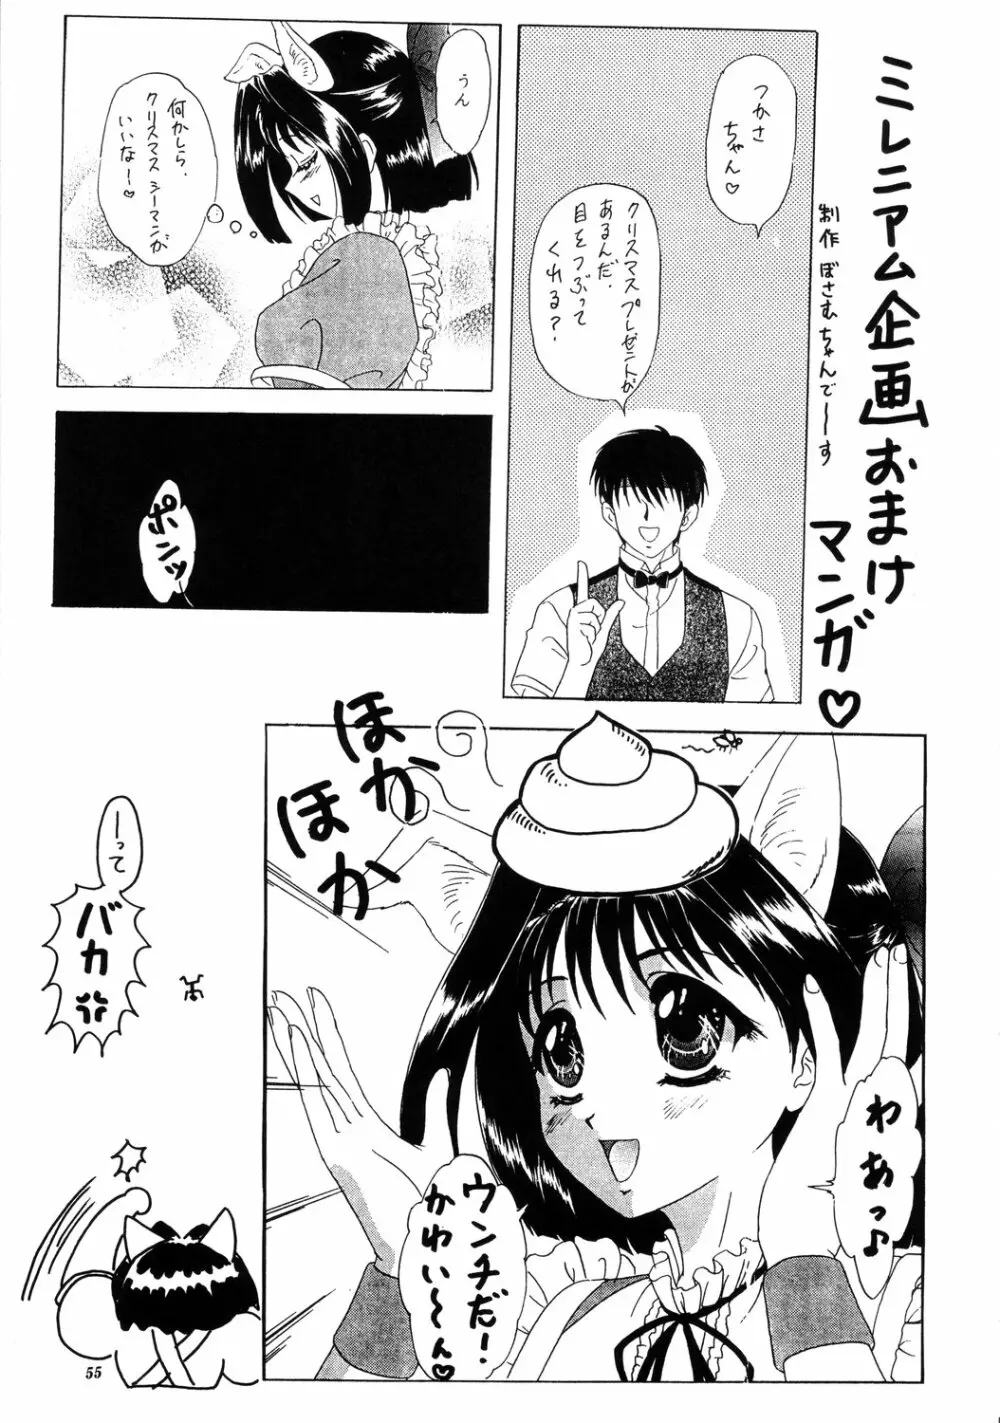 LUNCH BOX 40 - にんじんフルコース 2 - page54